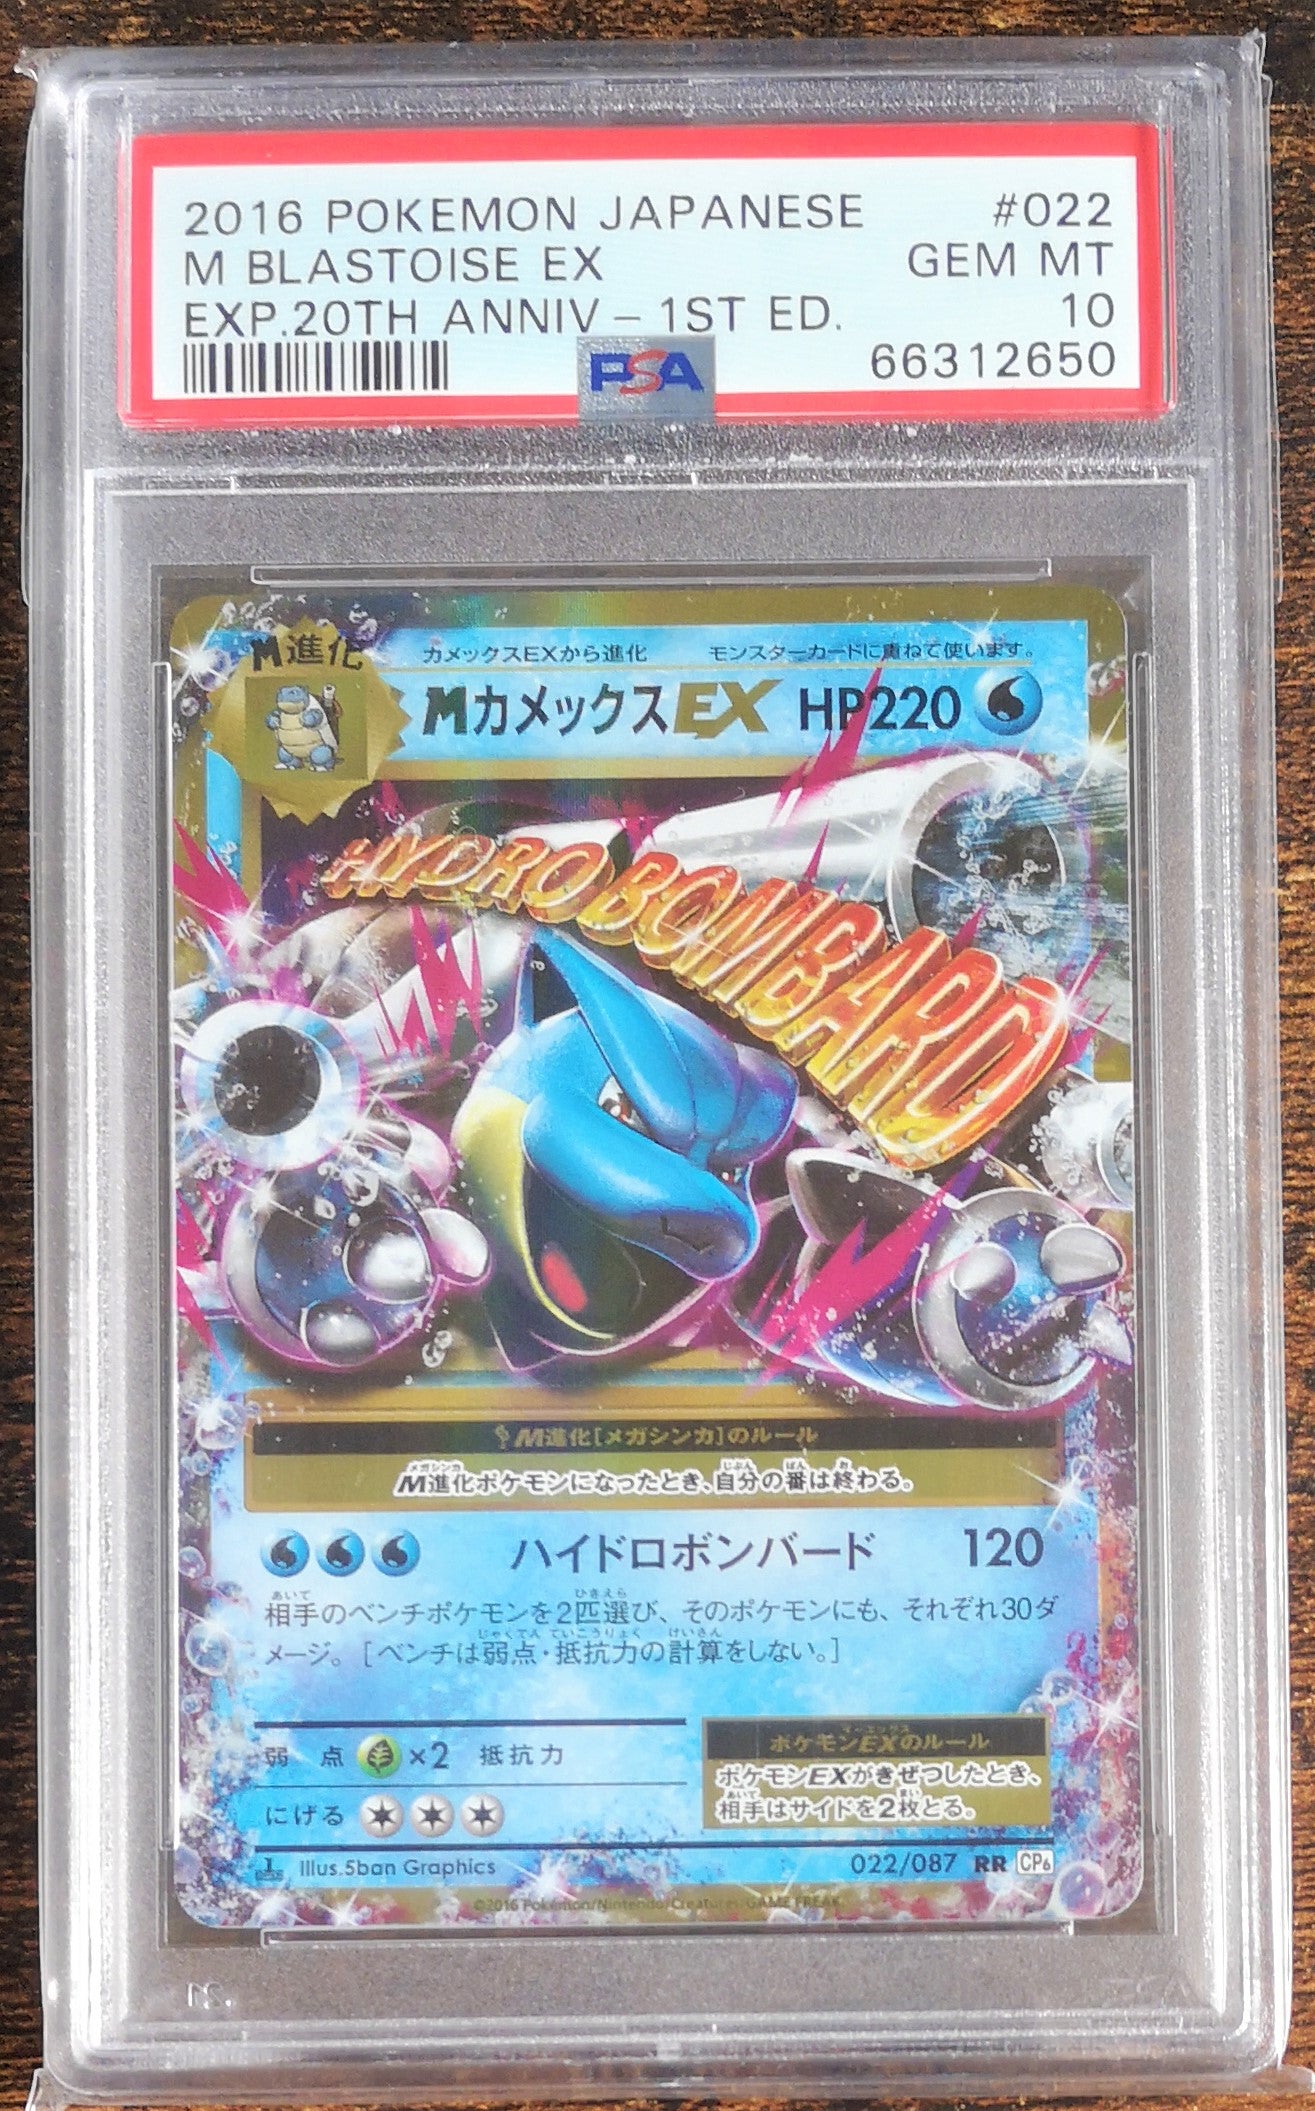 Protège-cartes Pokemon Tortank - Meccha Japan